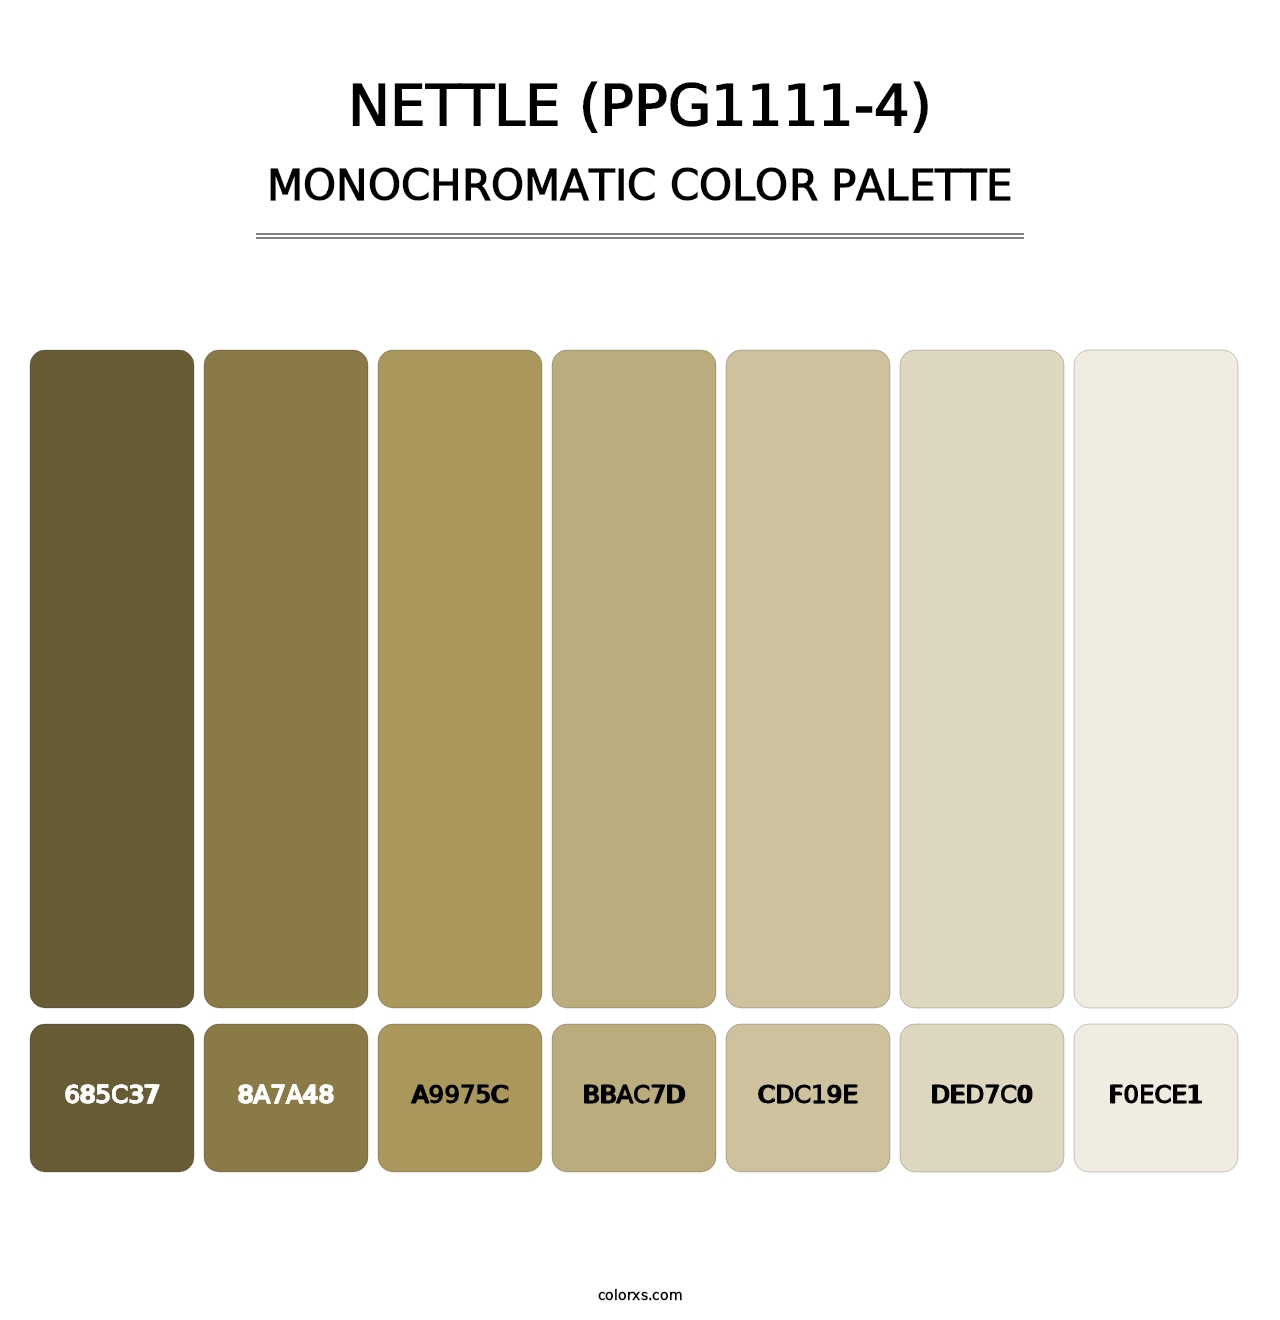 Nettle (PPG1111-4) - Monochromatic Color Palette